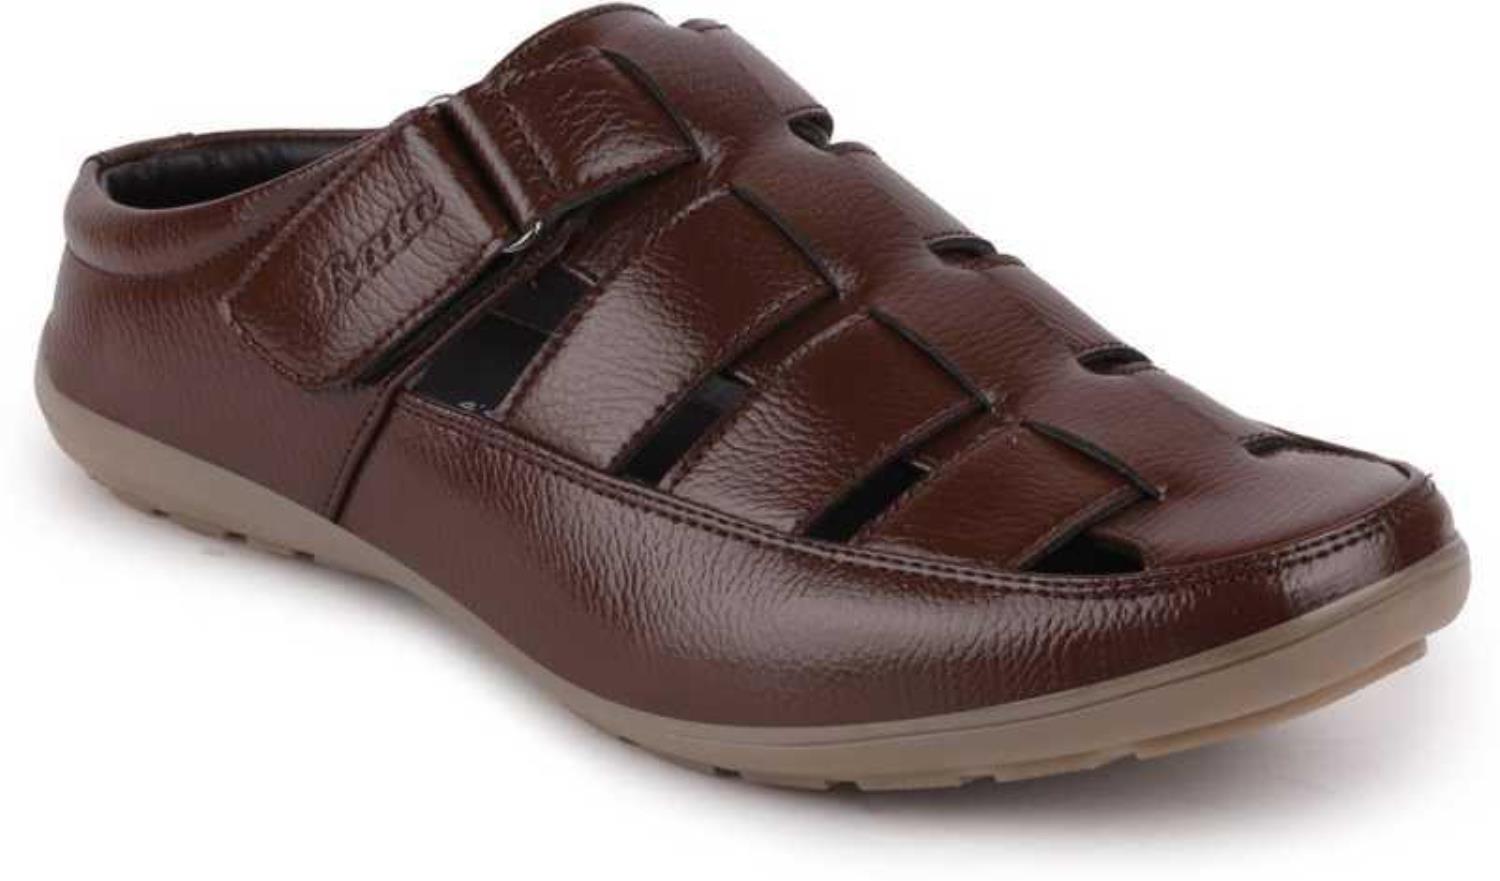 Bata Shoes Sandals | Mercari